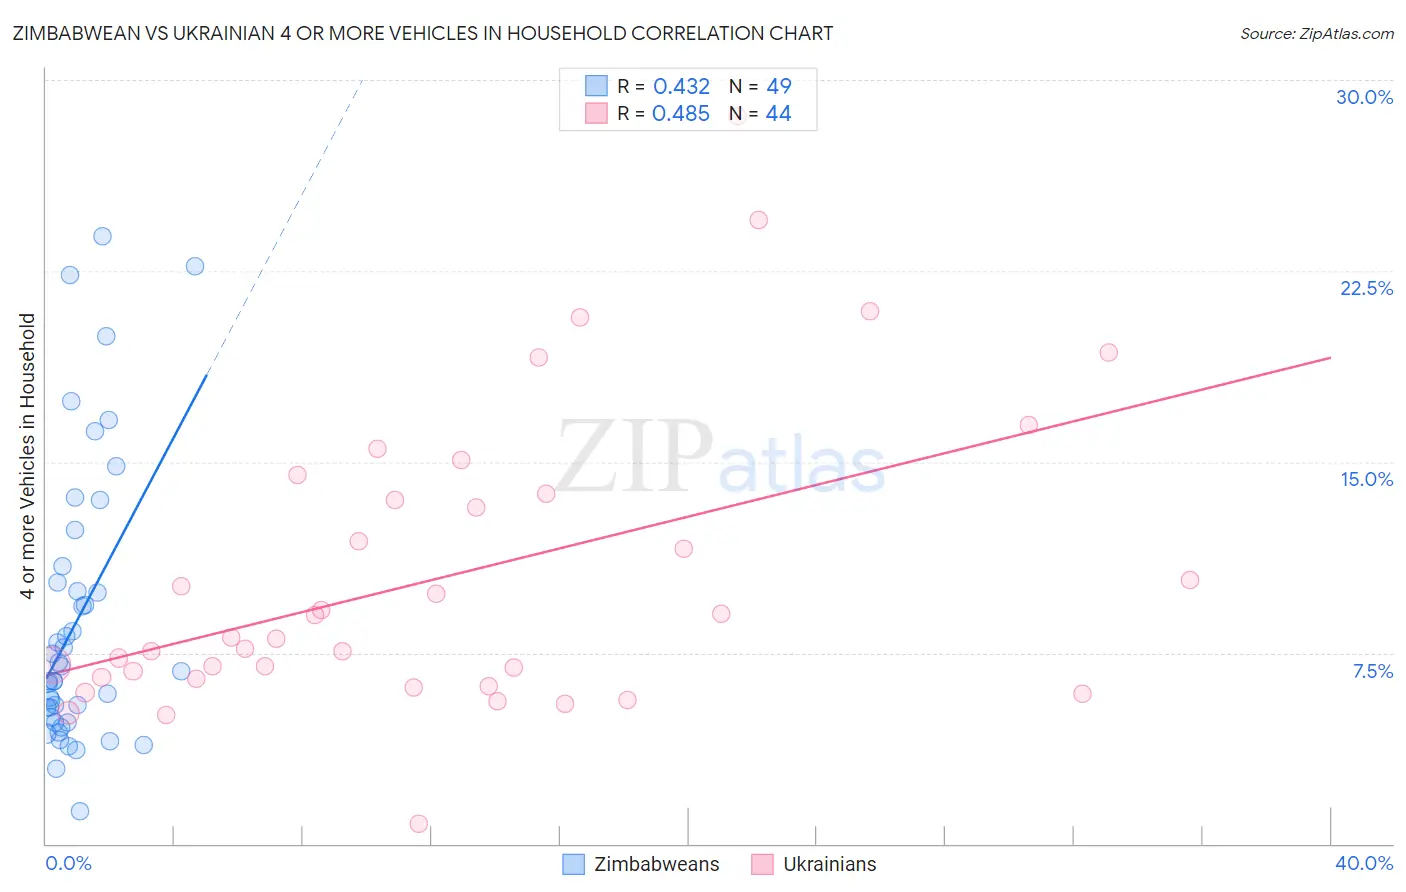 Zimbabwean vs Ukrainian 4 or more Vehicles in Household